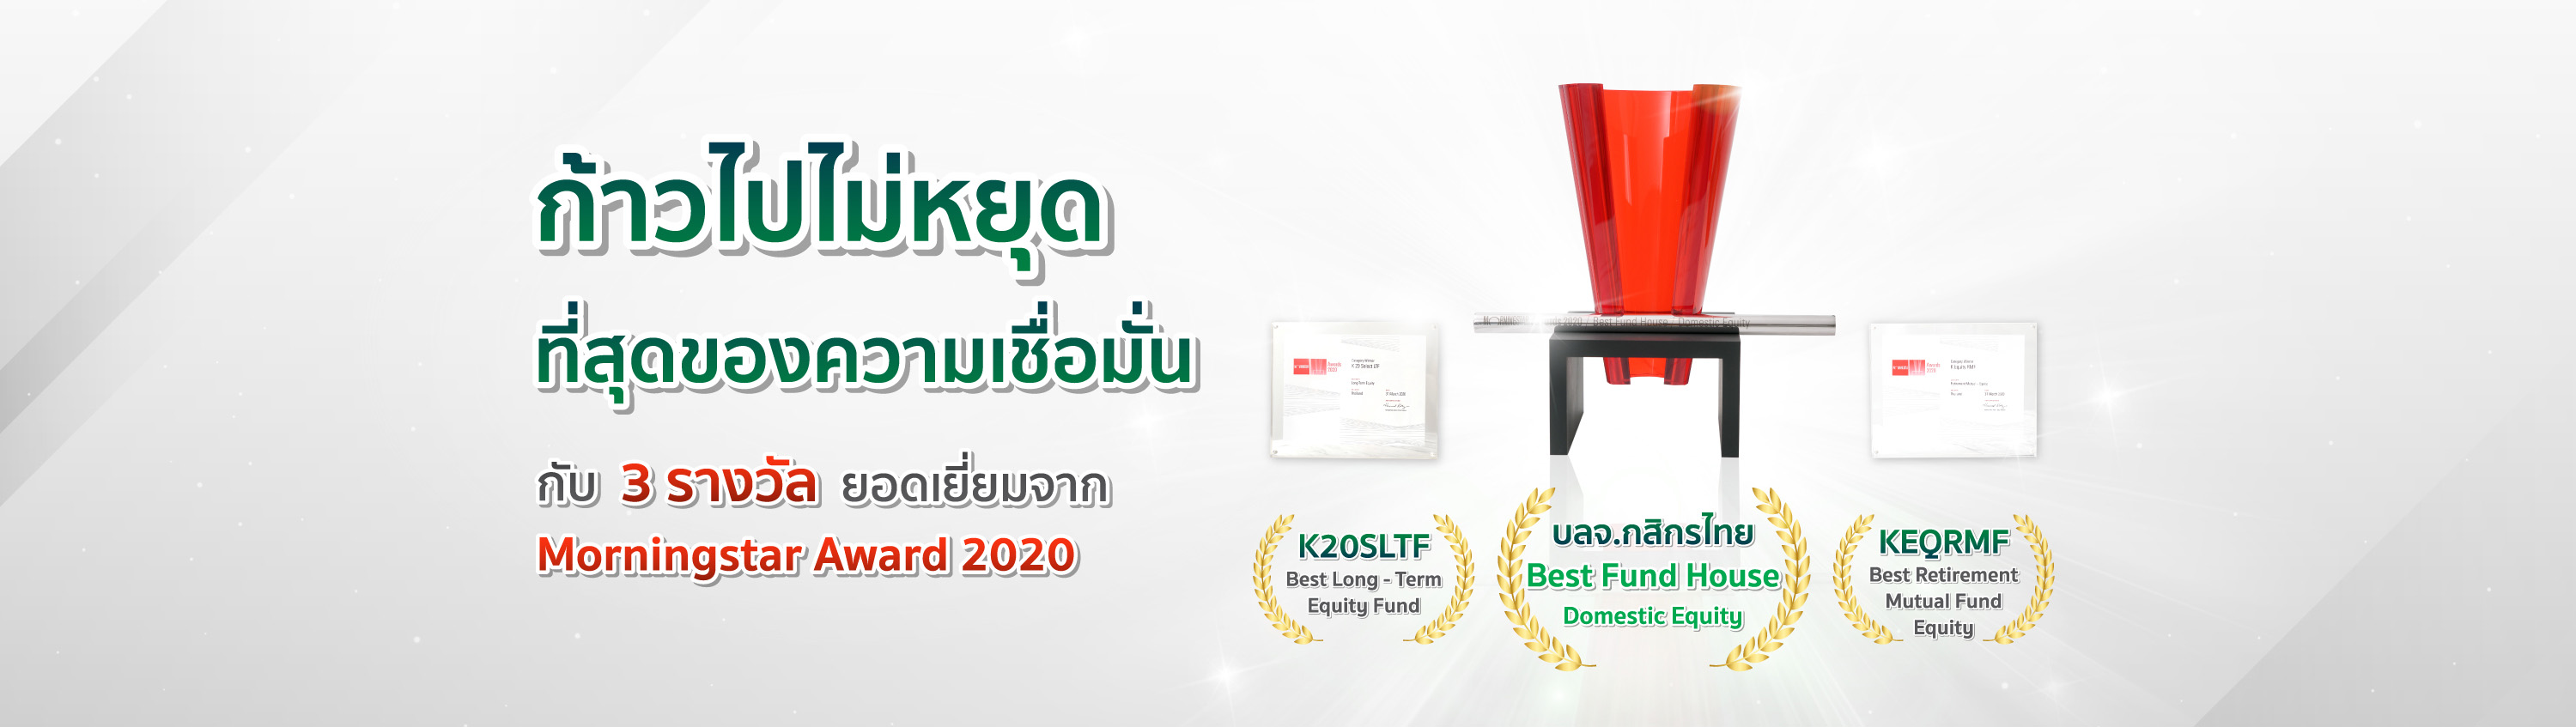 ลงทุนหุ้นไทย เลือกกสิกรไทย บลจ.ยอดเยี่ยมจาก Morningstar 2020
        และมั่นใจอีกขั้นกับ รางวัลกองทุนลดหย่อนภาษียอดเยี่ยม ทั้ง LTF และ RMF